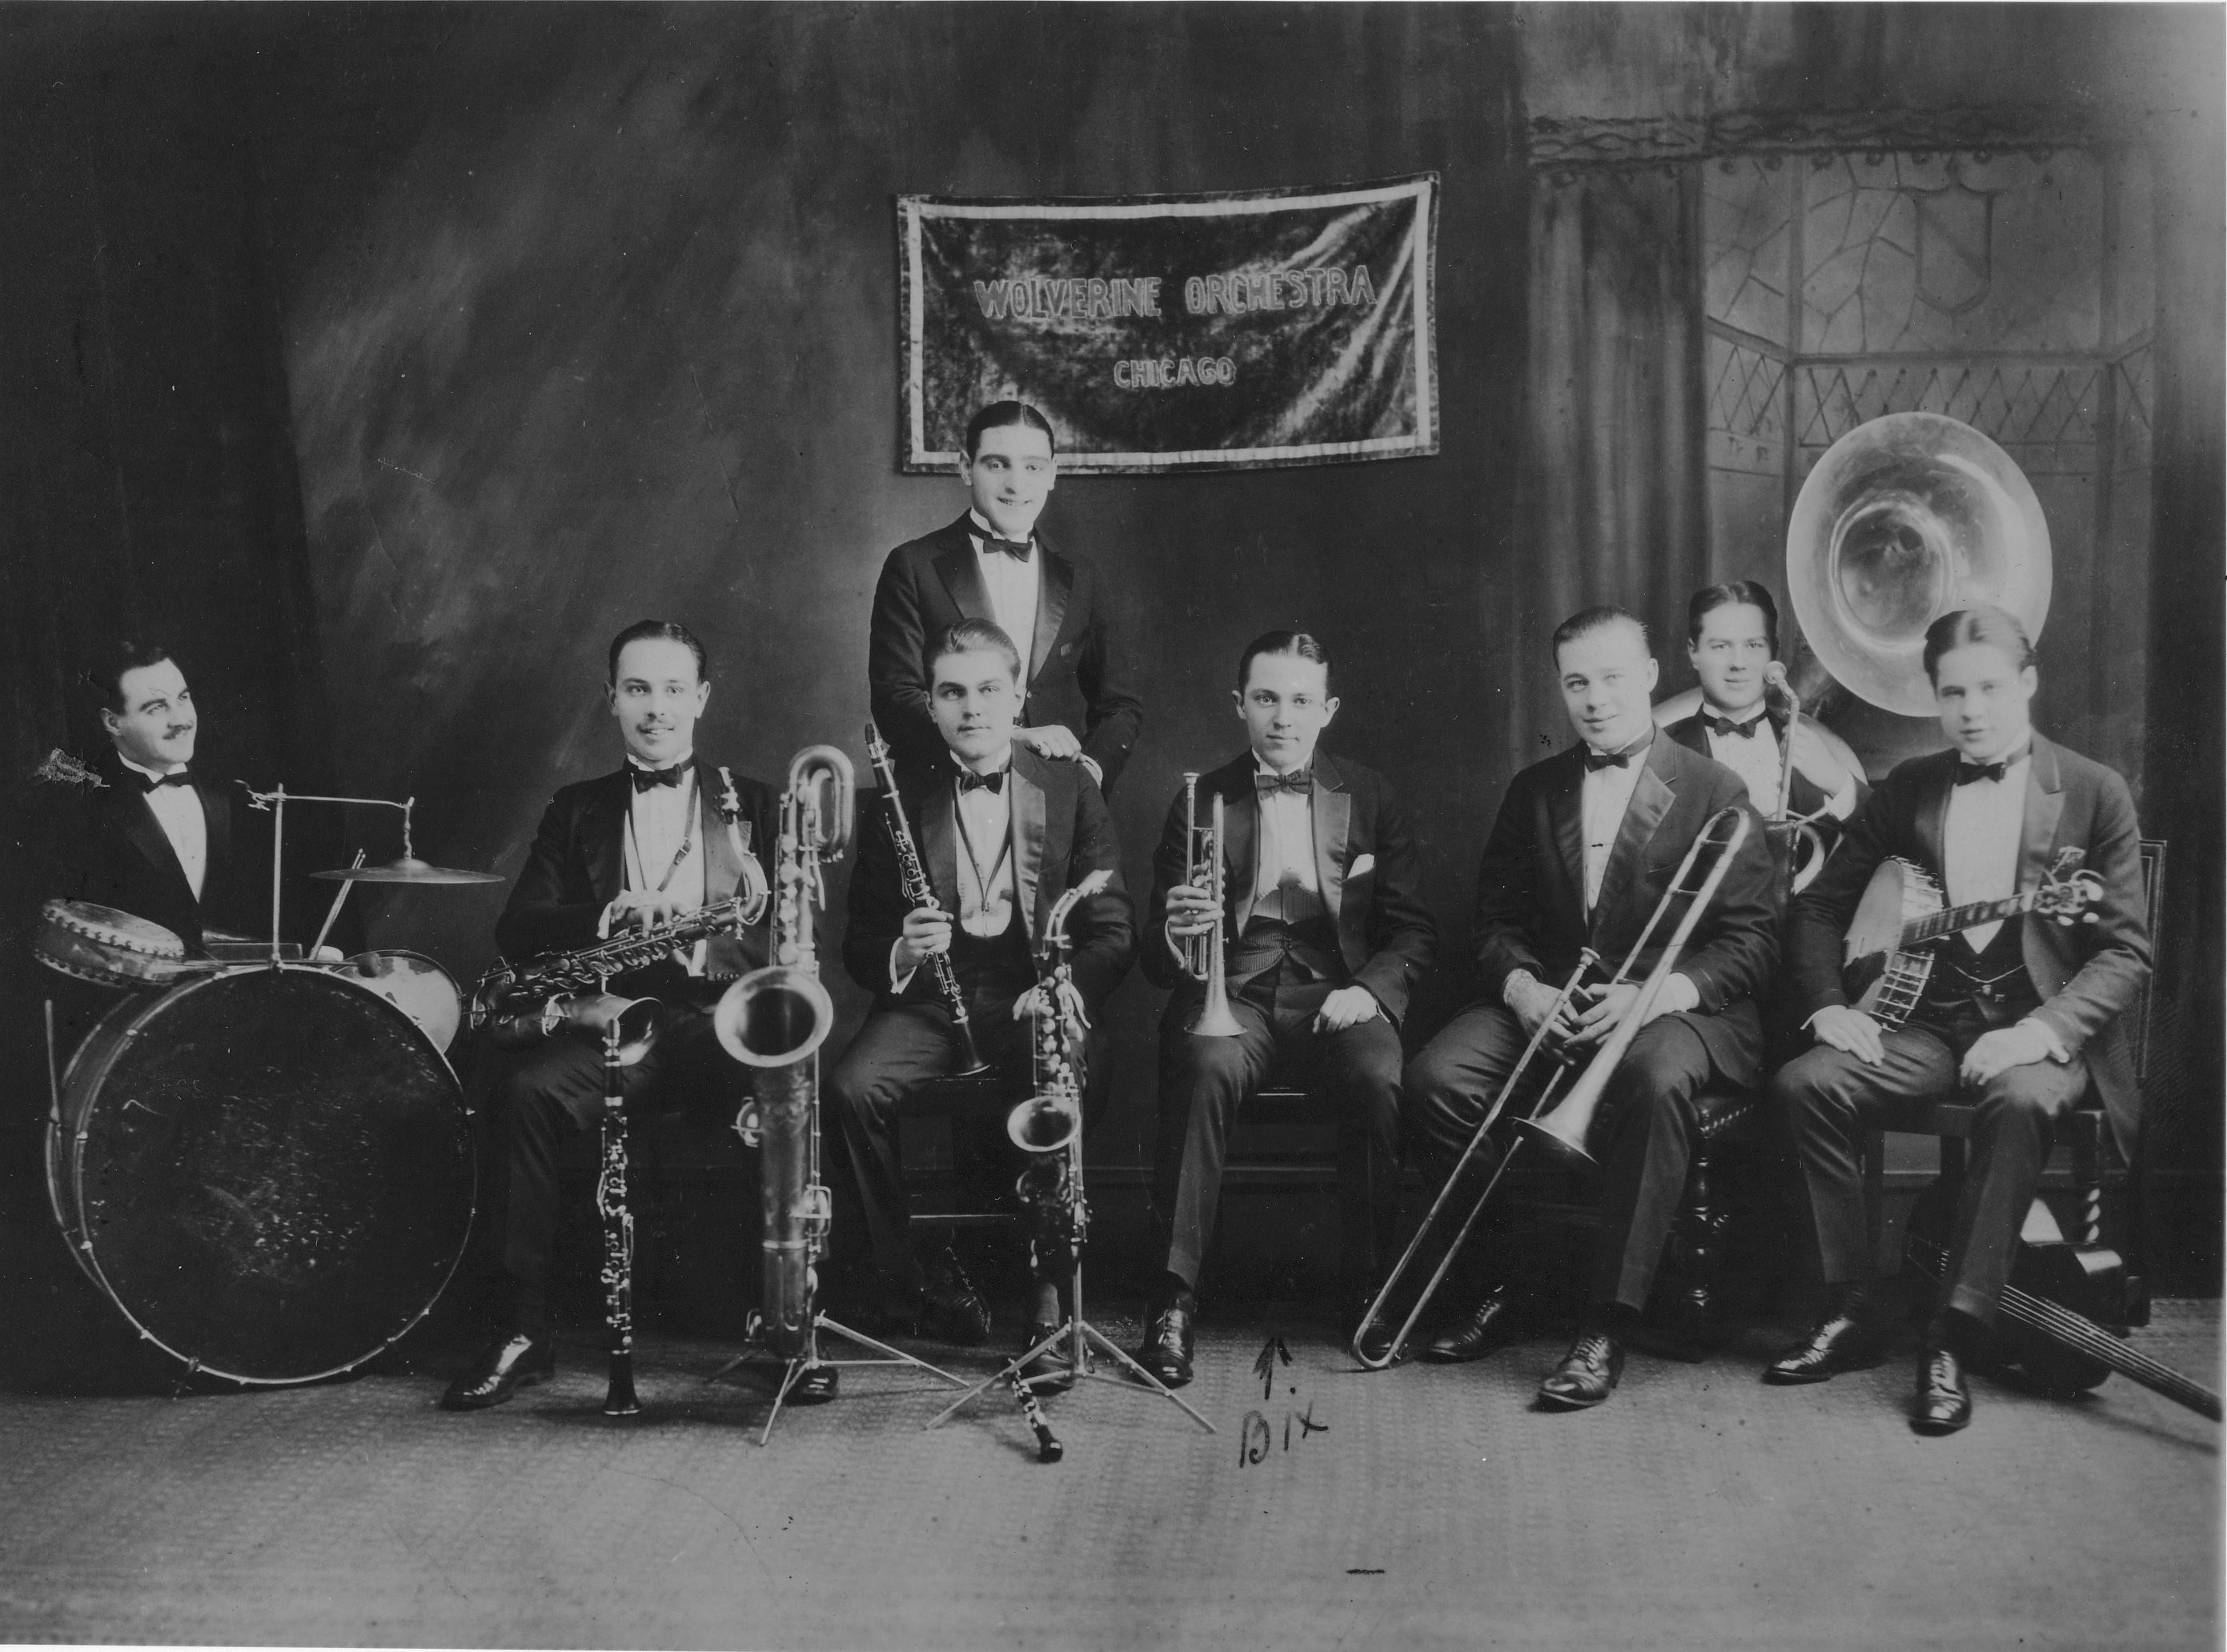 1920s Jazz Club